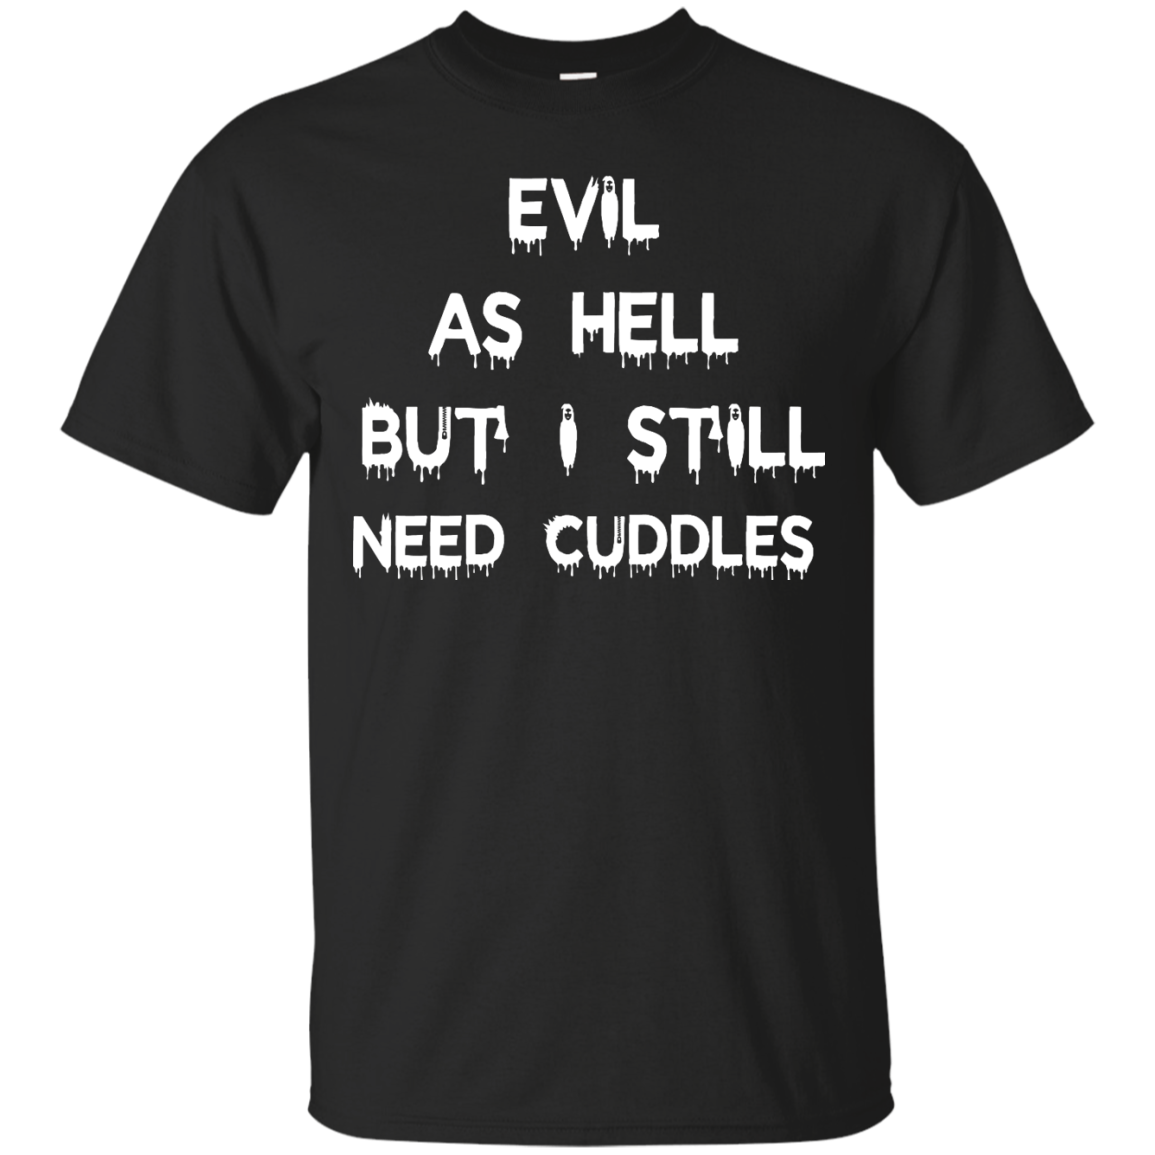 Evil as hell but I still need cuddles shirt, tank